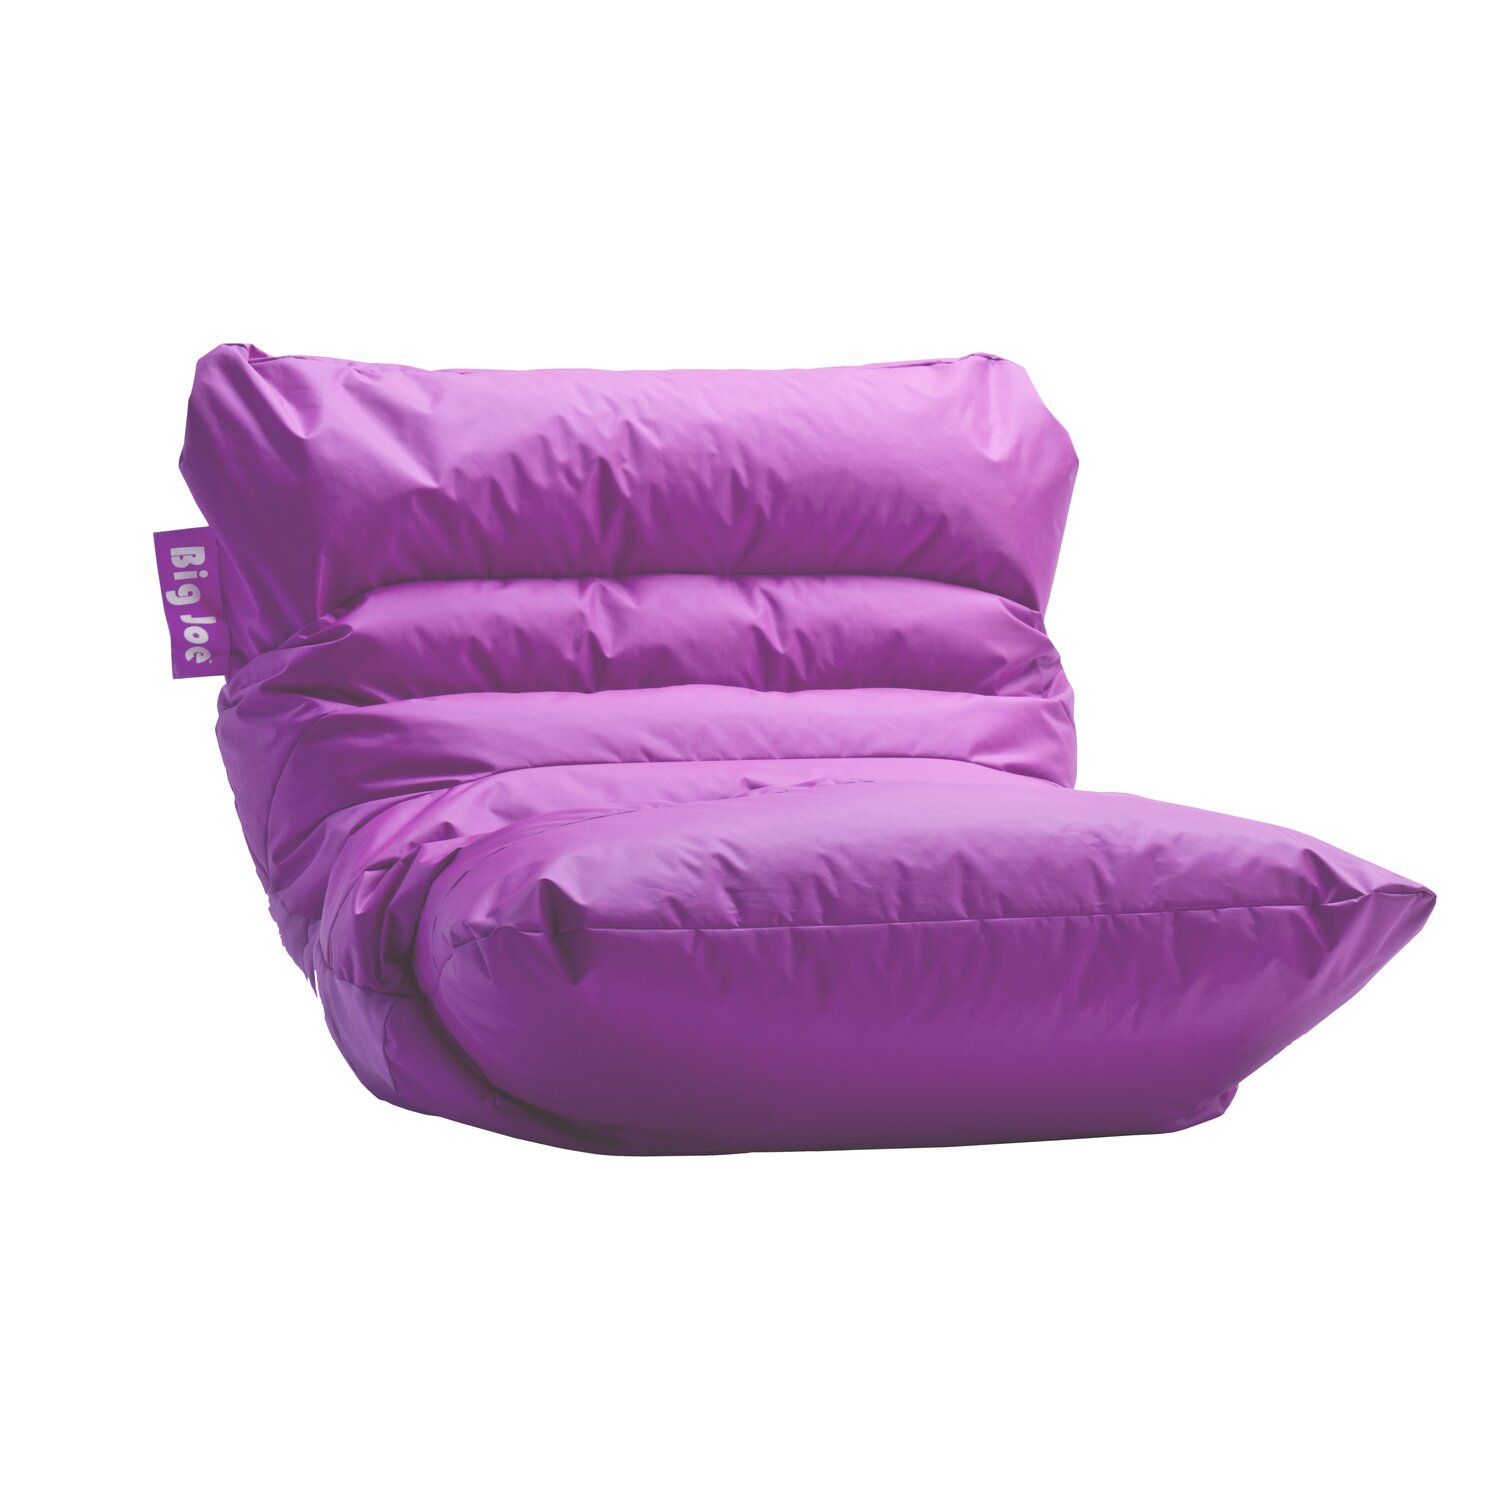 Purple bean bag chair Ajman